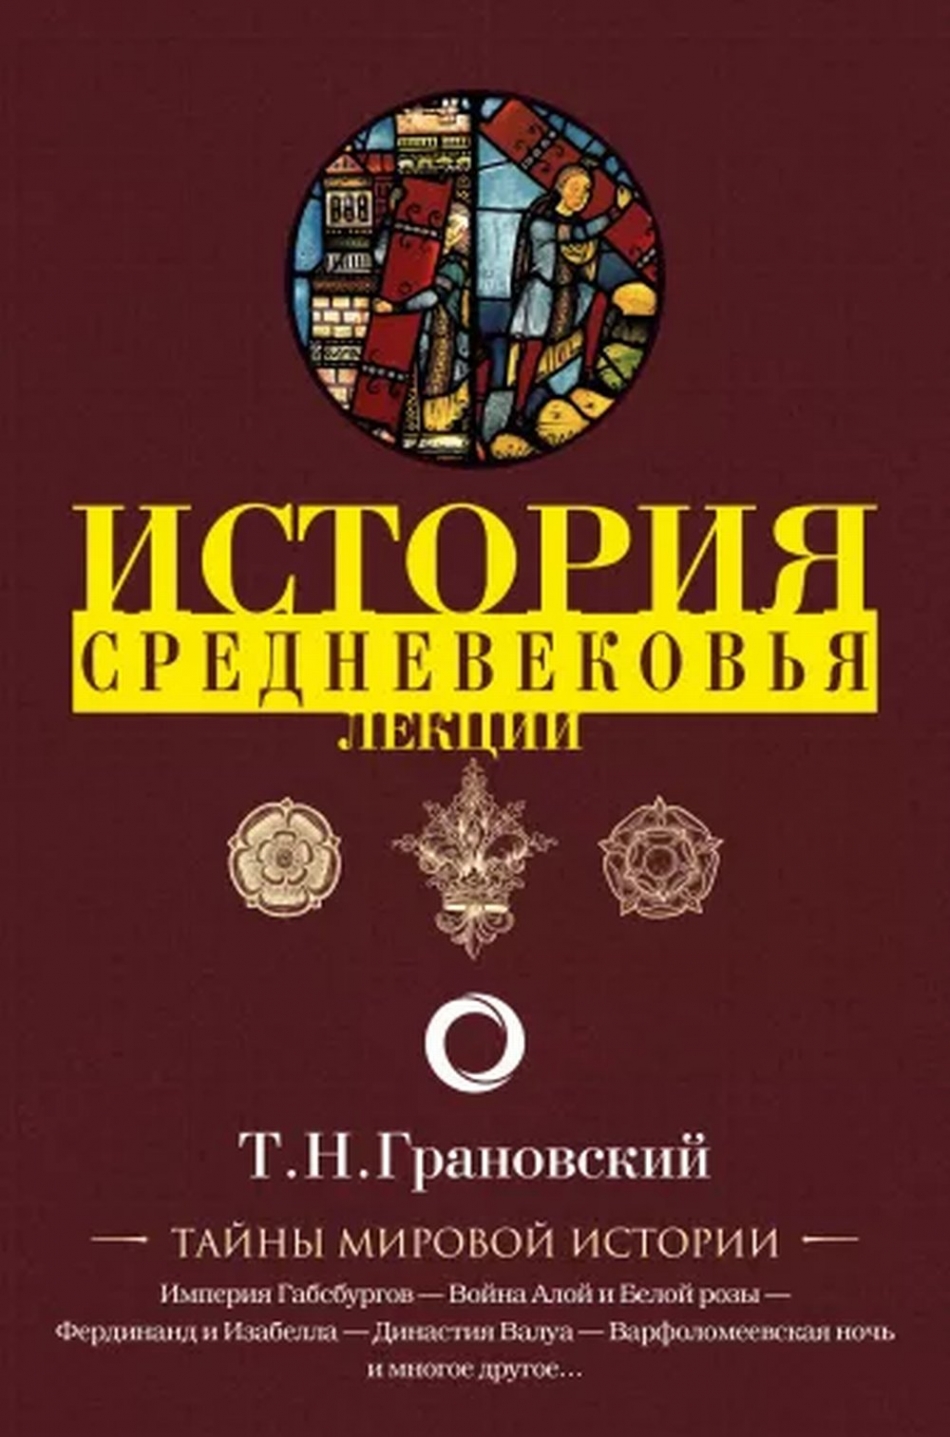 Грановский Т.Н. Лекции по истории позднего Средневековья 